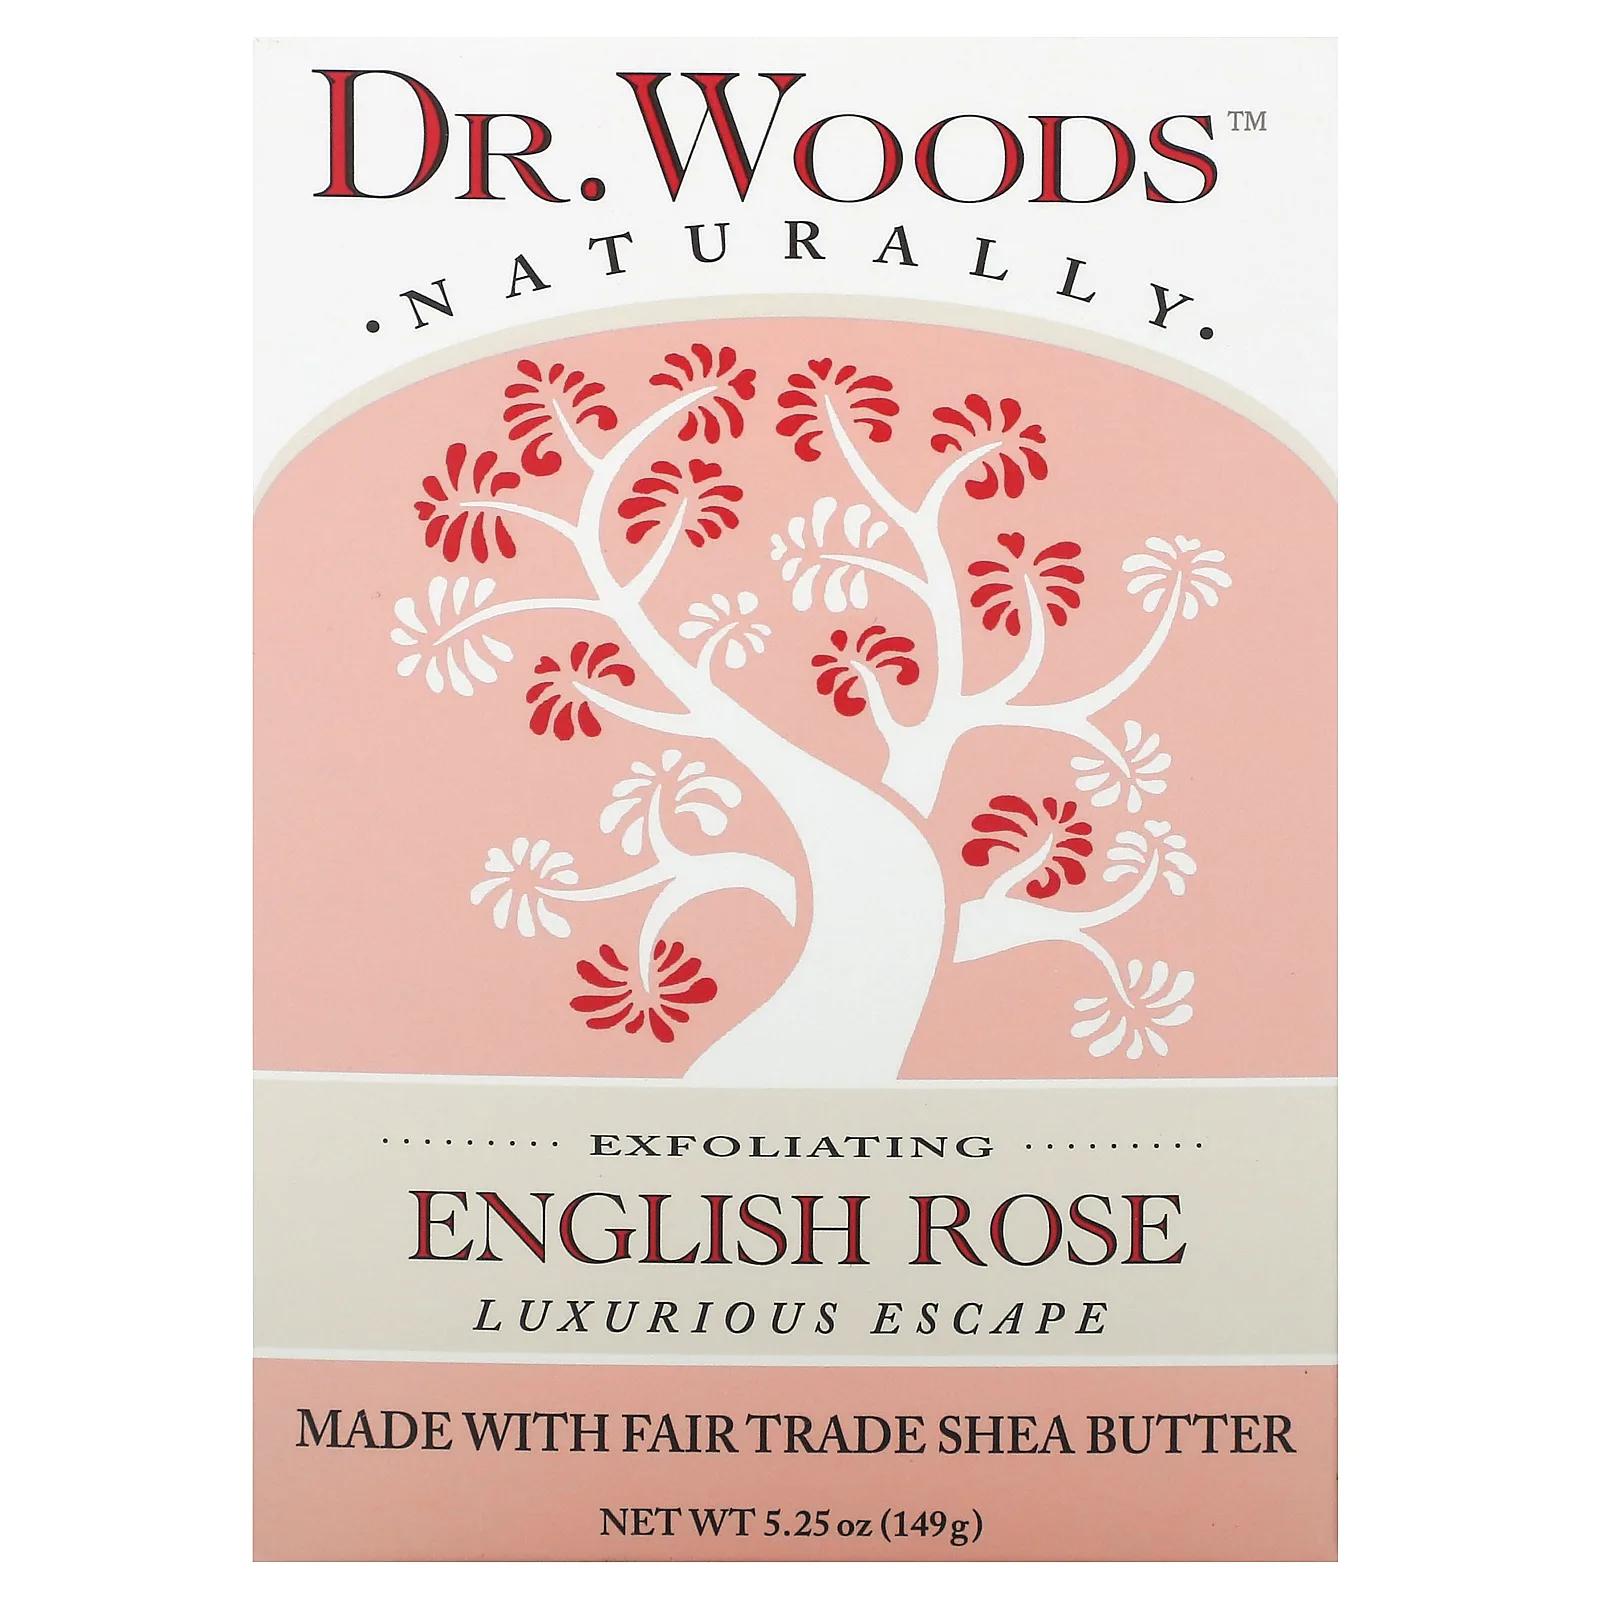 Dr. Woods Английское мыло с ароматом розы эффект осветления кожи 5.25 унций (149 г) dr woods английское мыло с ароматом розы эффект осветления кожи 149 г 5 25 унции